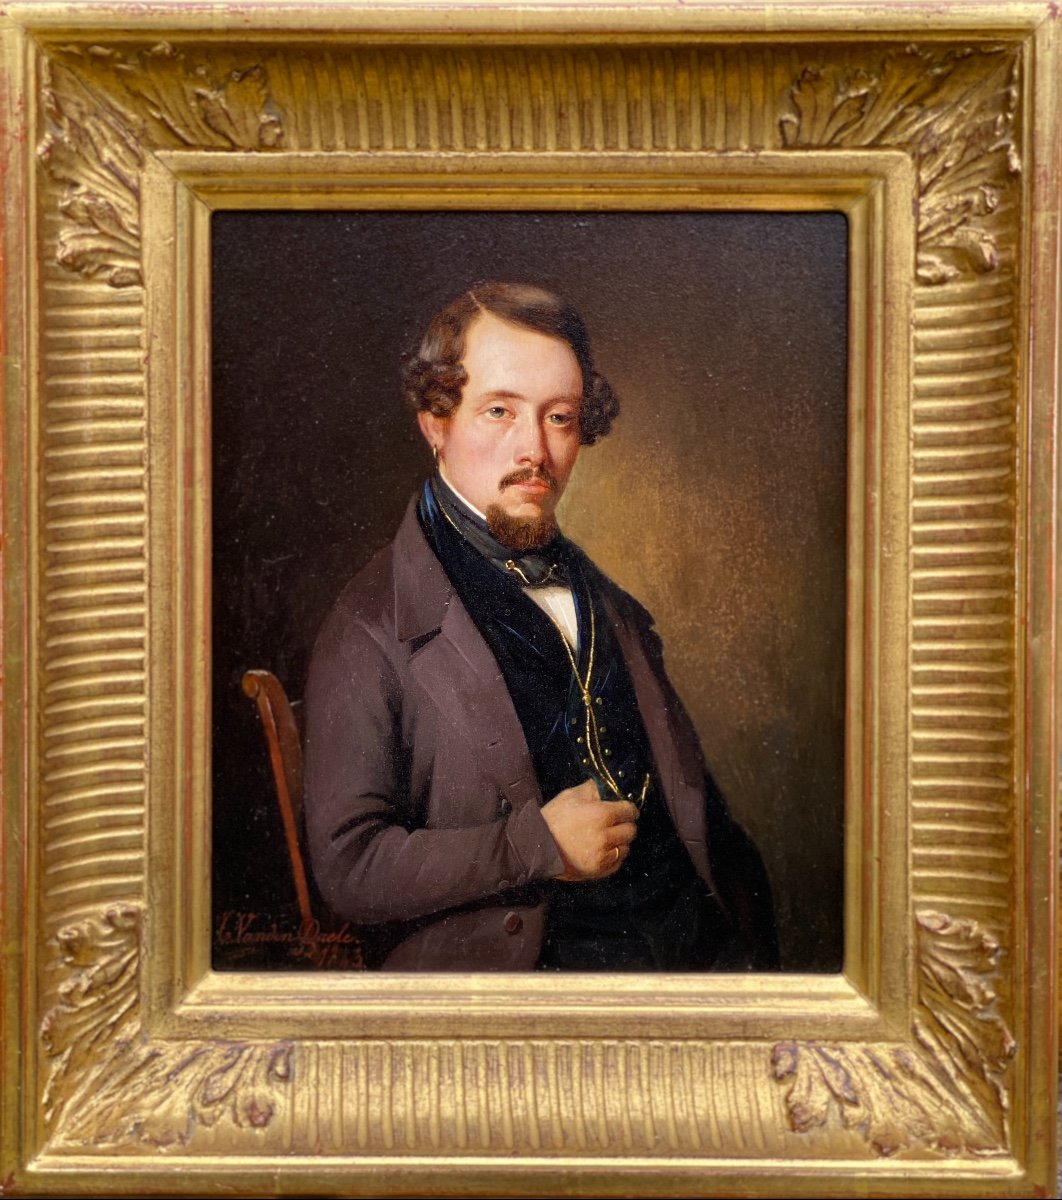 Portrait d'Un Gentleman,  Vandendaele Casimir, Deinze 1818 - 1880 Gand, Peintre Belge